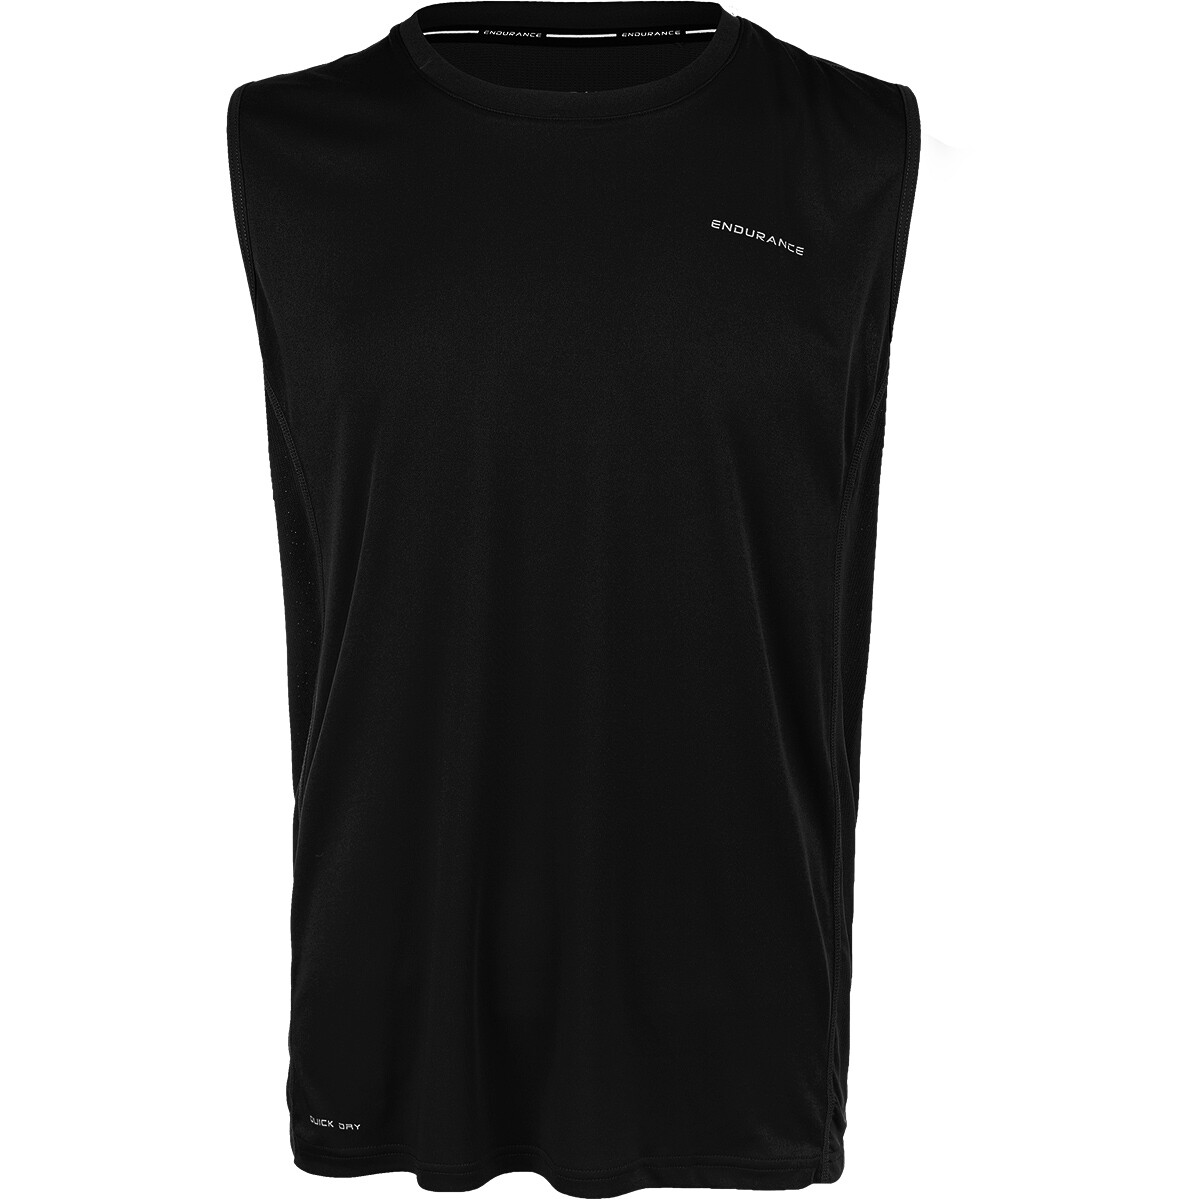 Herren T-Shirt Endurance  Astio Elite Singlet Black